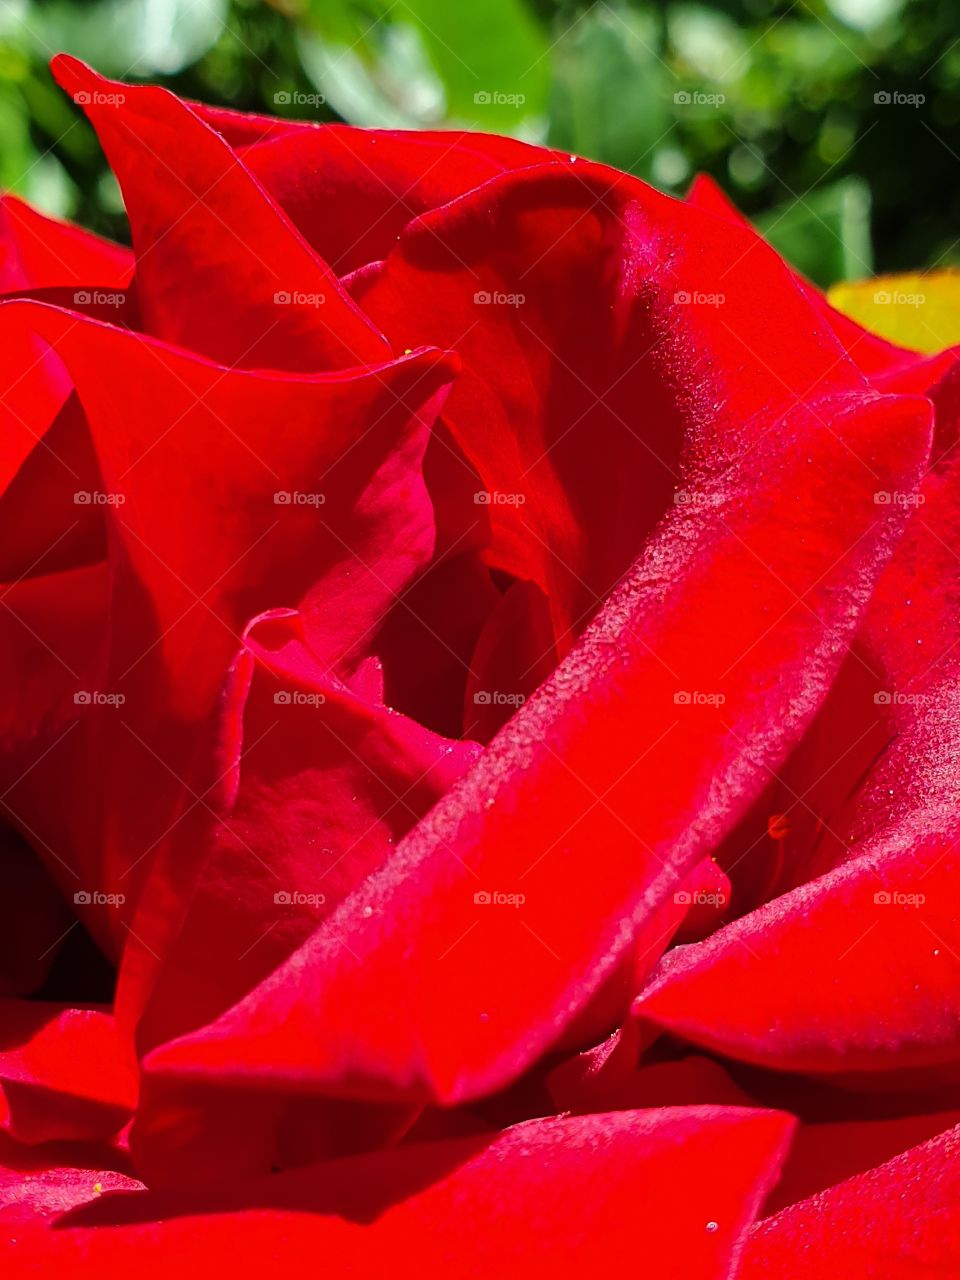 lavish bright red velvet rose petals